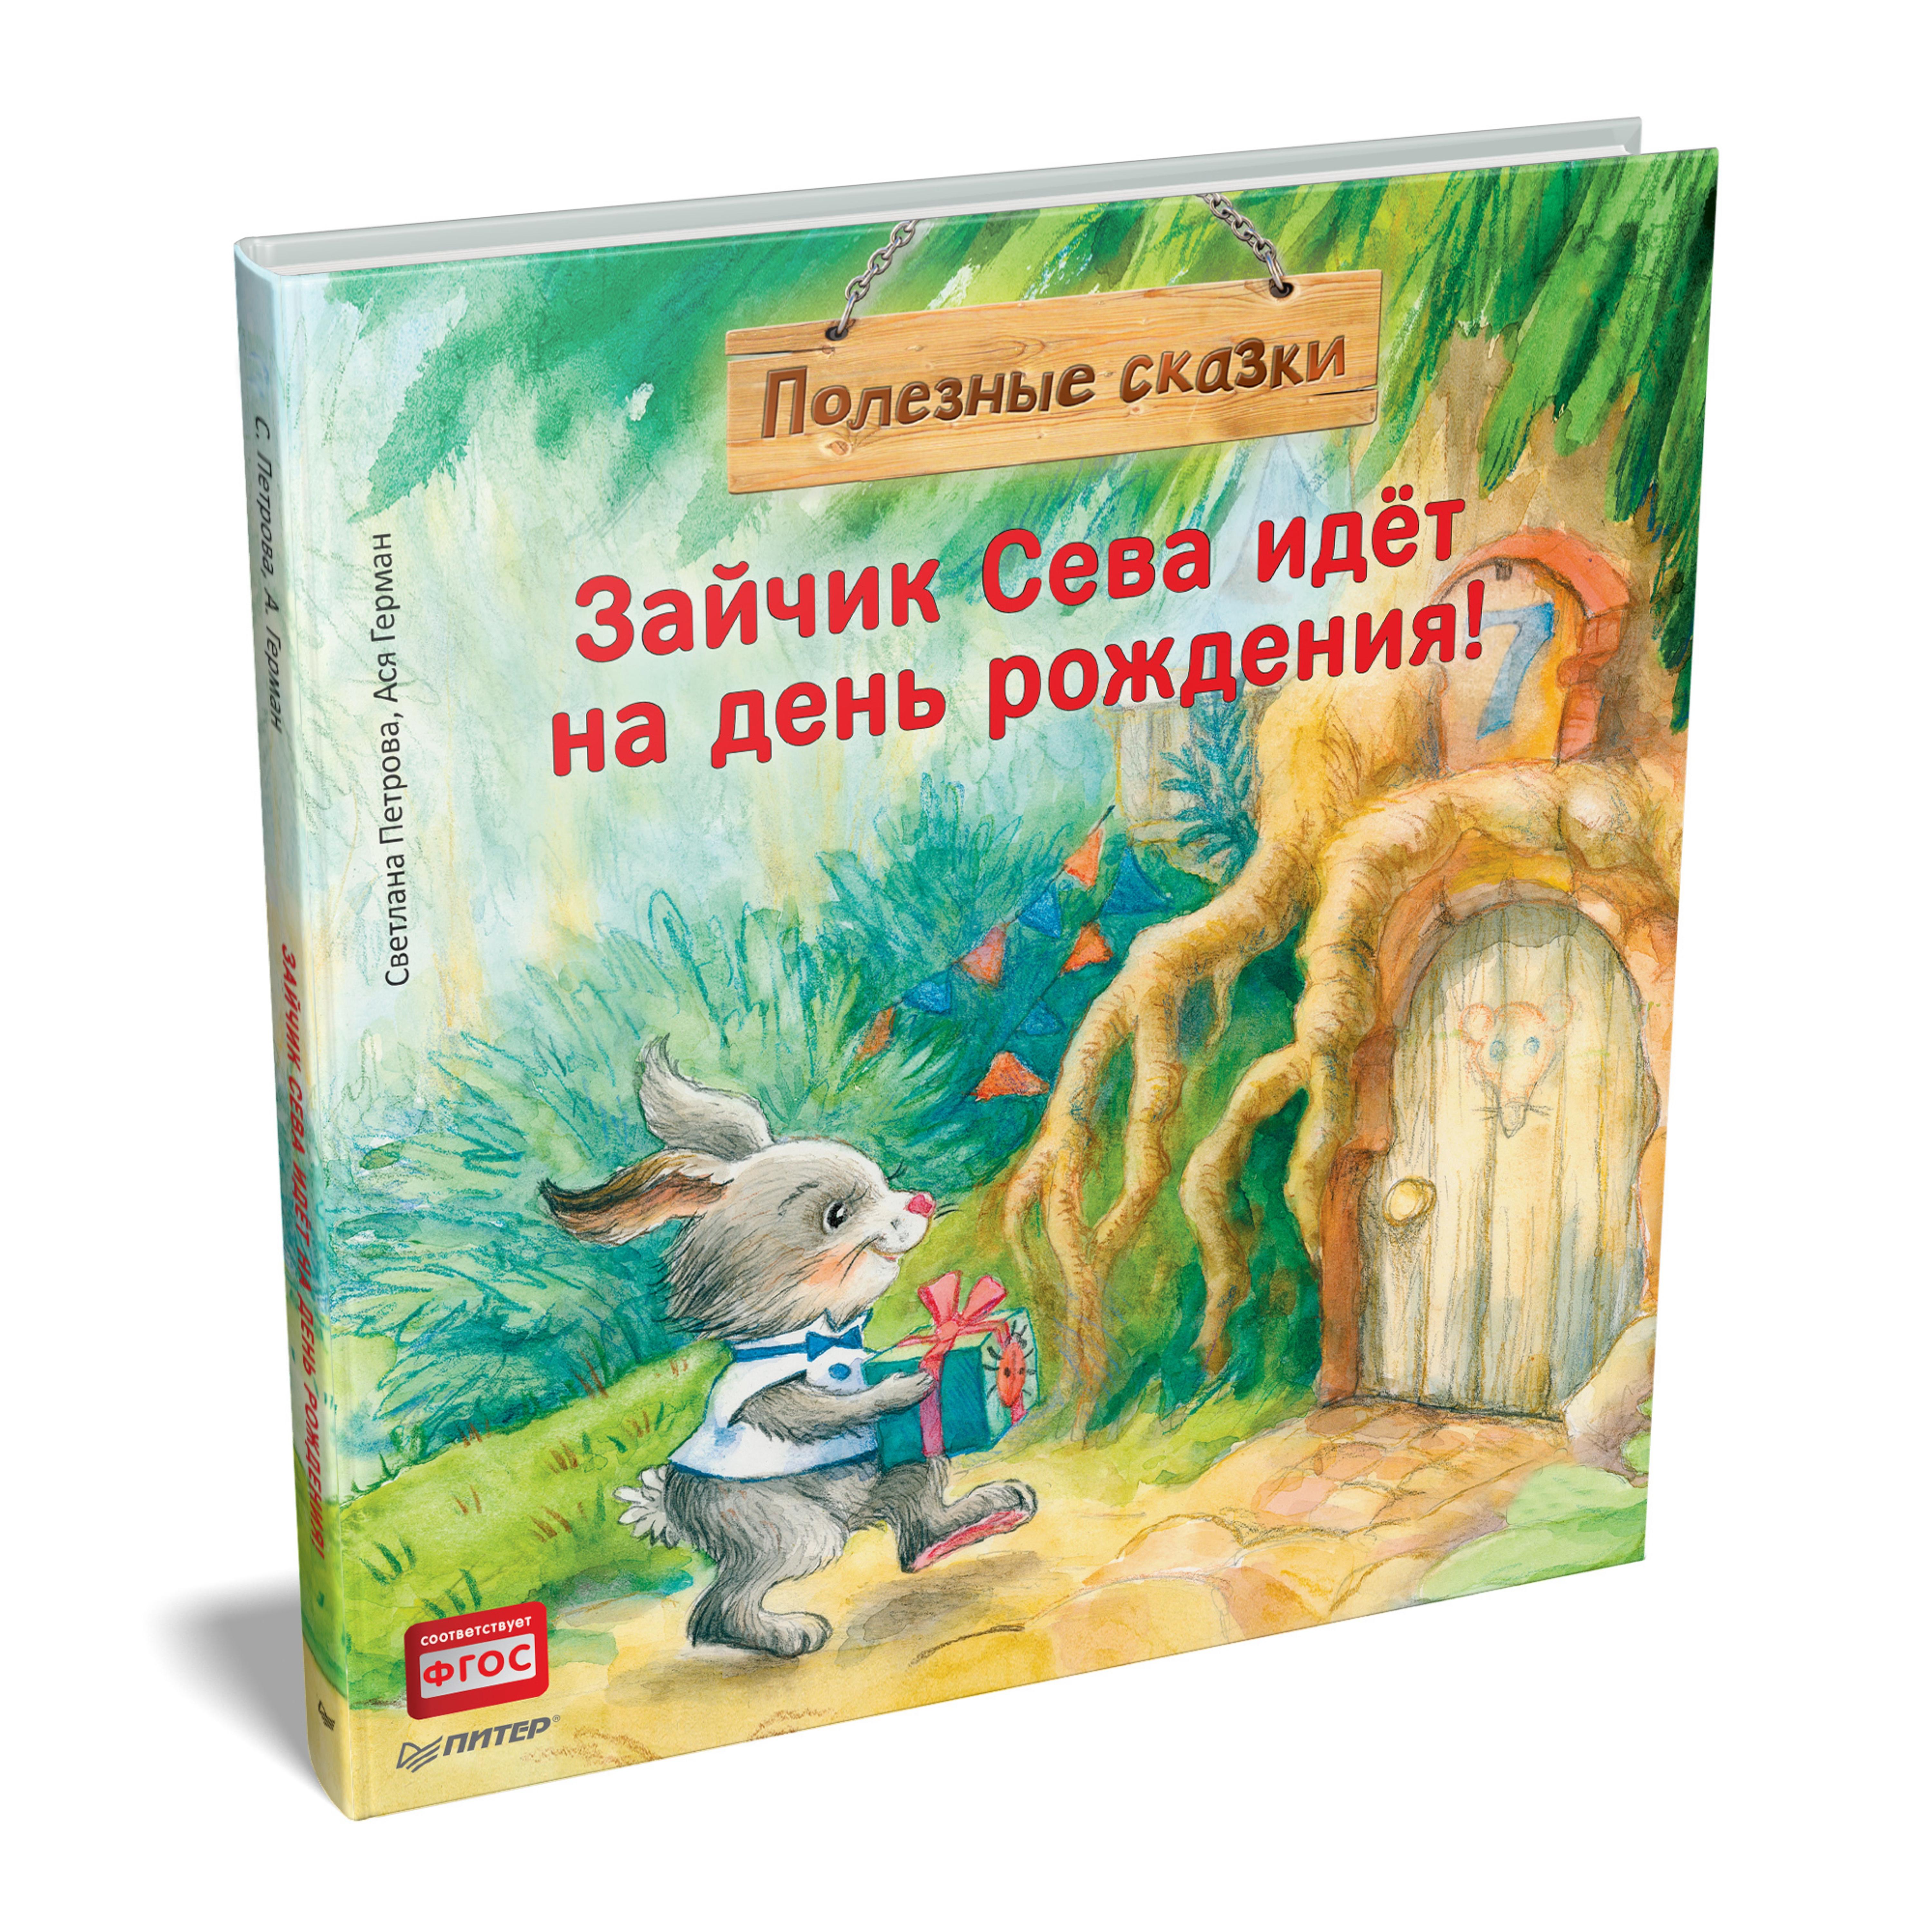 Книга "Зайчик Сева идёт на день рождения!", С. Петрова, А. Герман